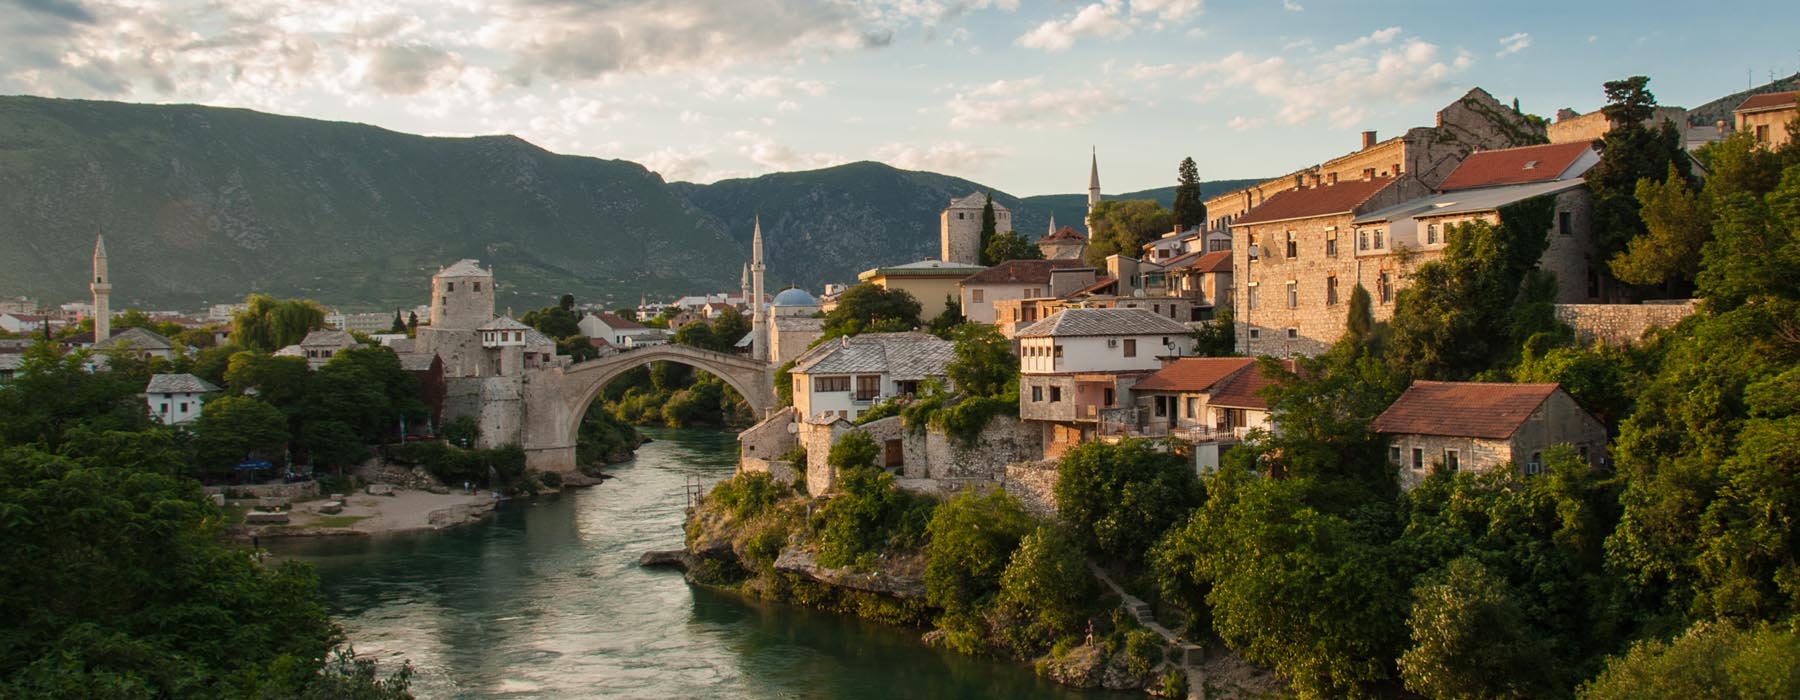 Voyages au lent cours Bosnie-Herzégovine